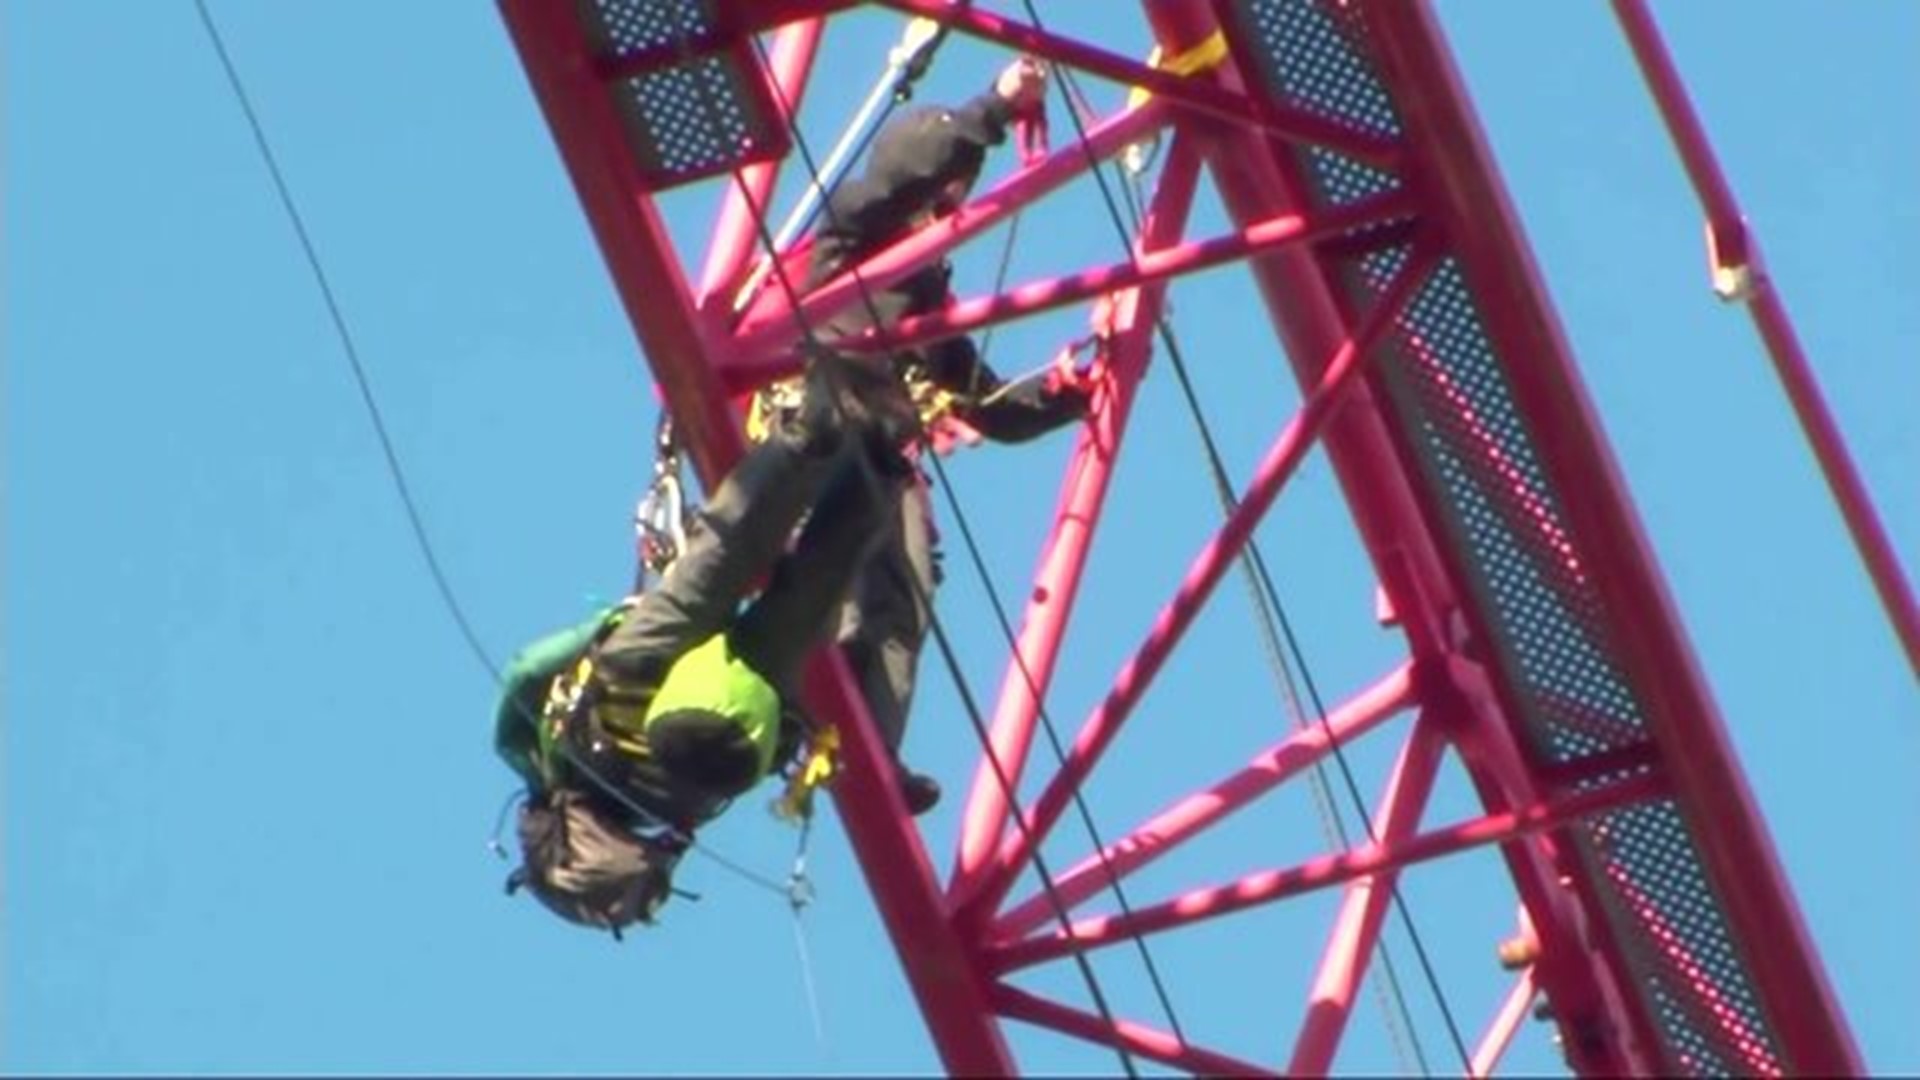 Protesters climb crane in Washington, D.C.